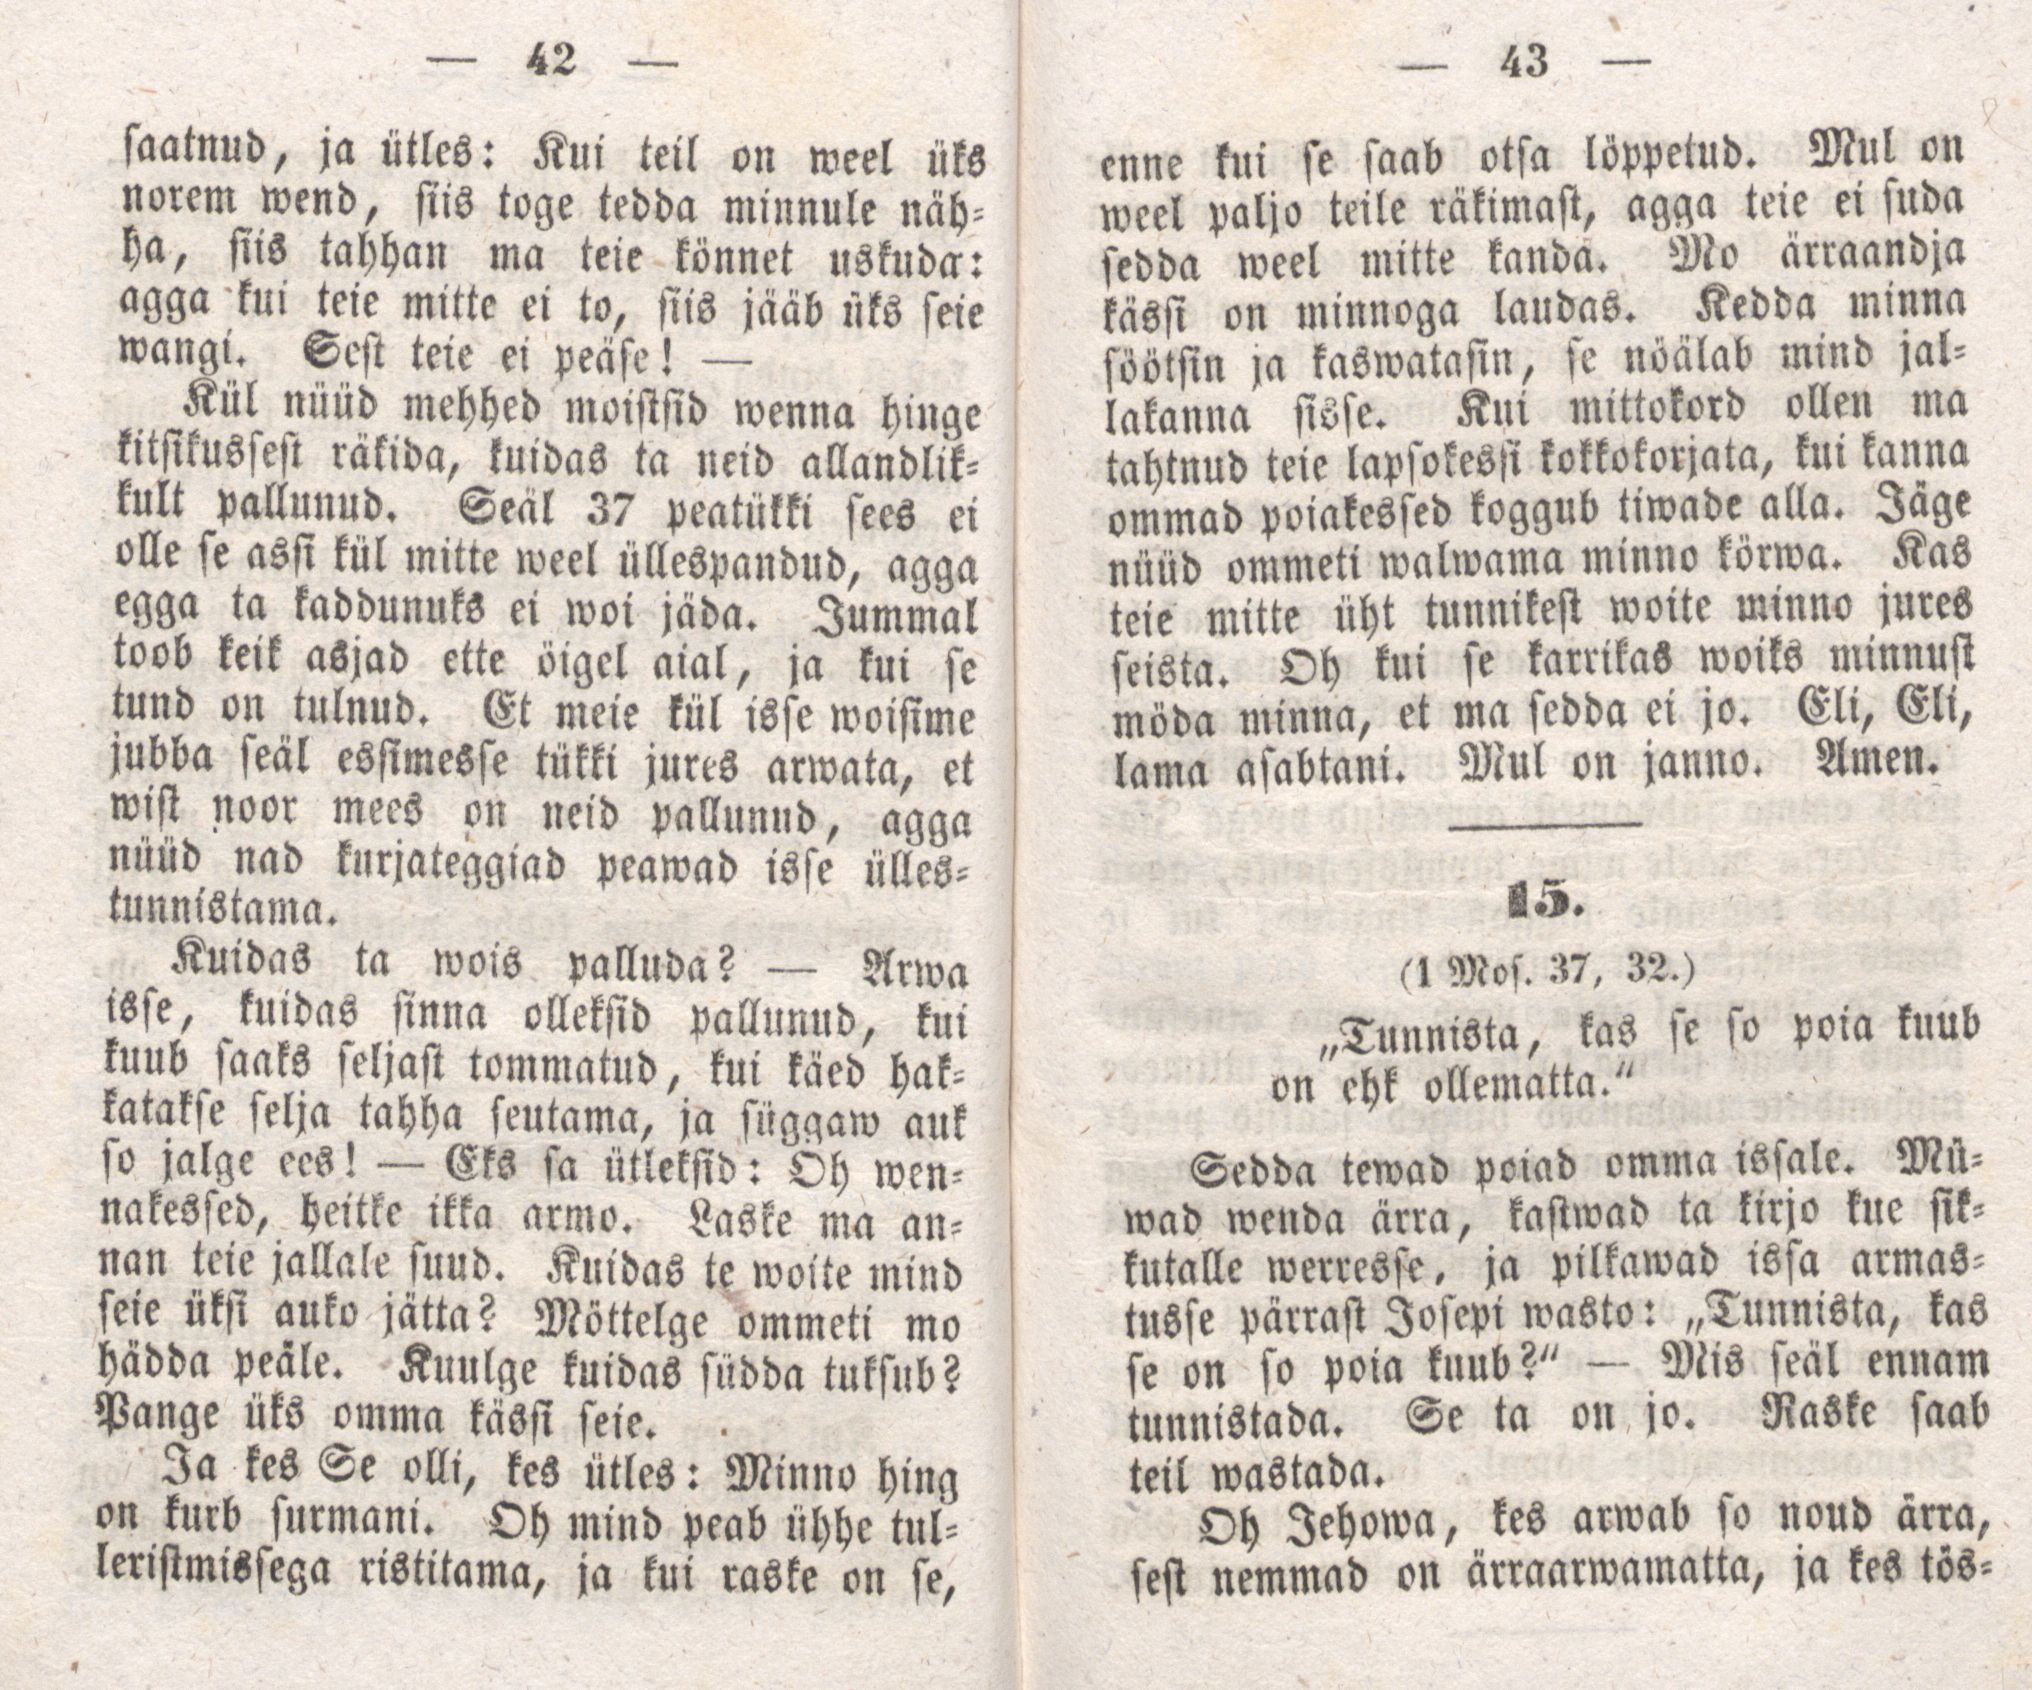 Josepi elloramat (1850) | 24. (42-43) Haupttext